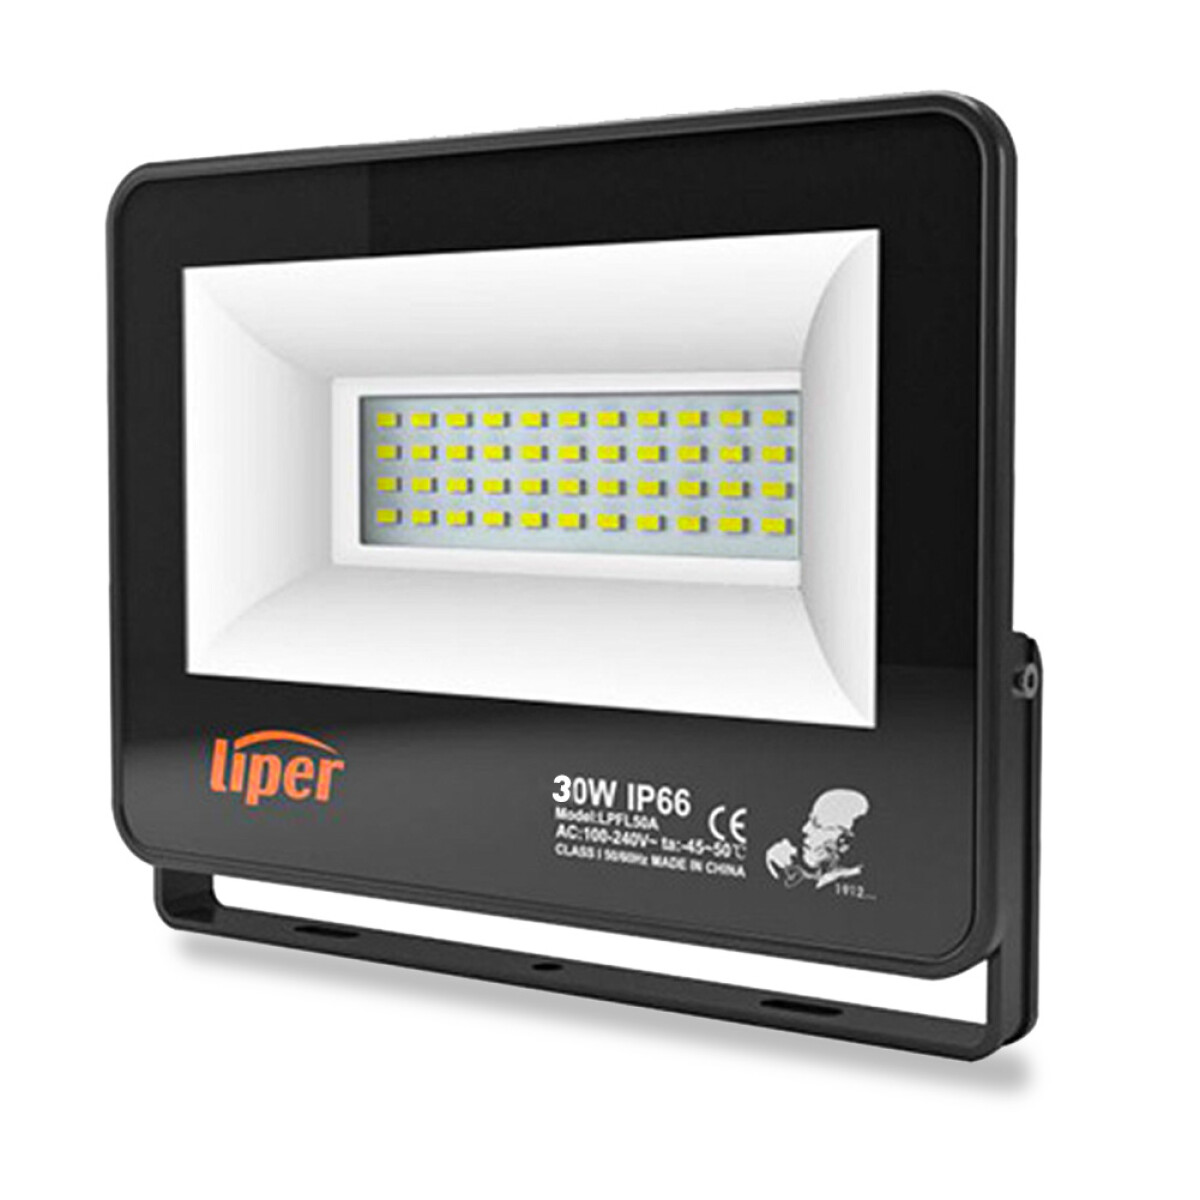 Foco Reflector Liper 30W Luz Fría IP66 - 001 